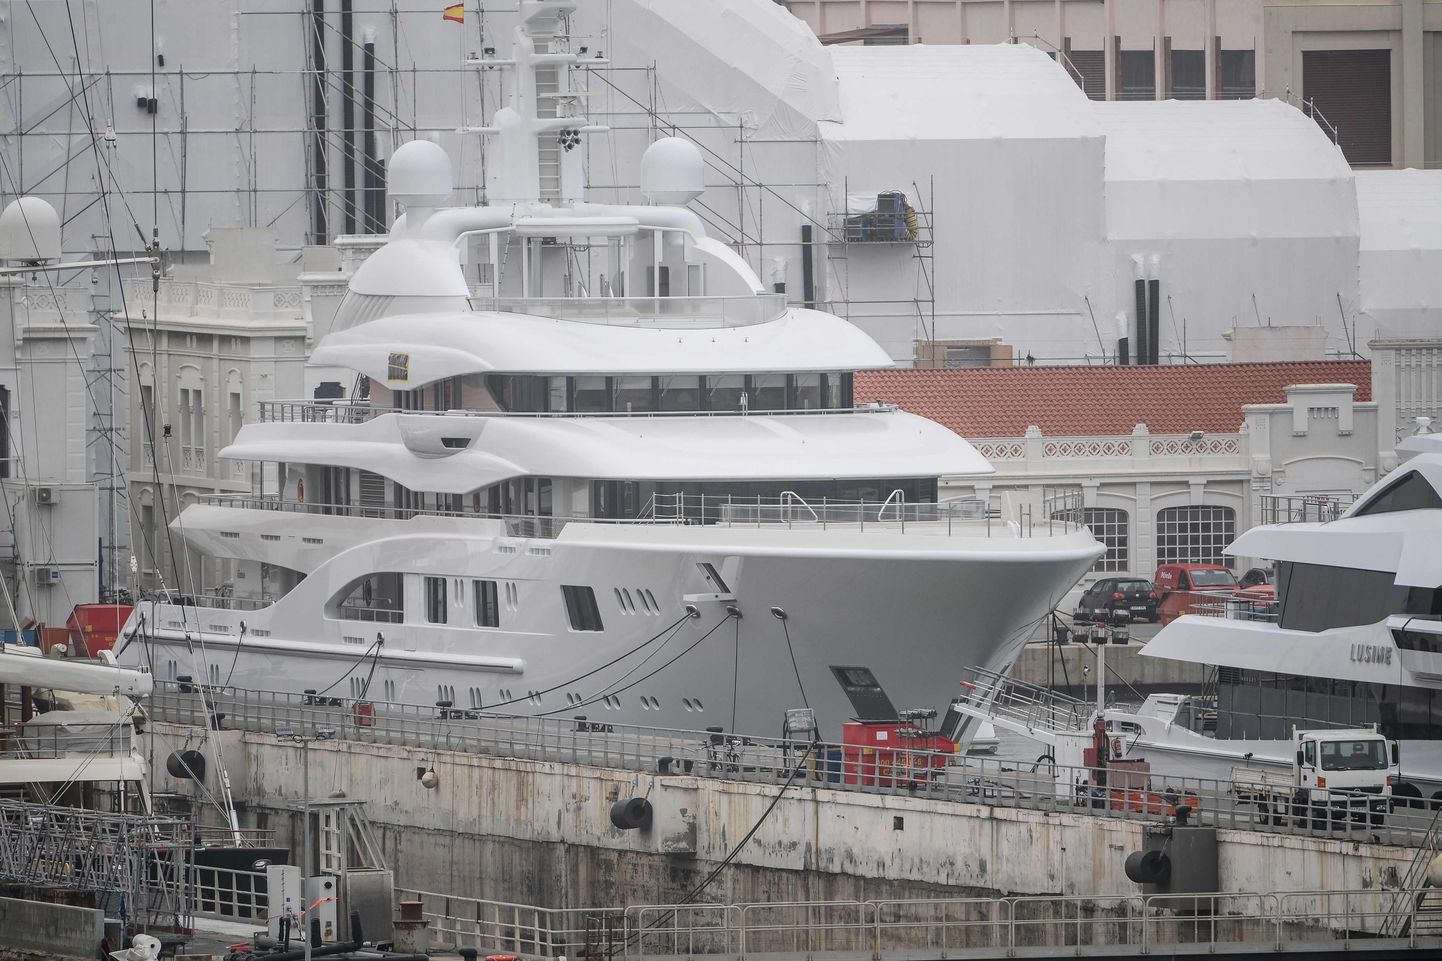 Российская яхта Valerie, задержанная в Испании, может быть связана с главой госкорпорации «Ростех» Сергеем Чемезовым.